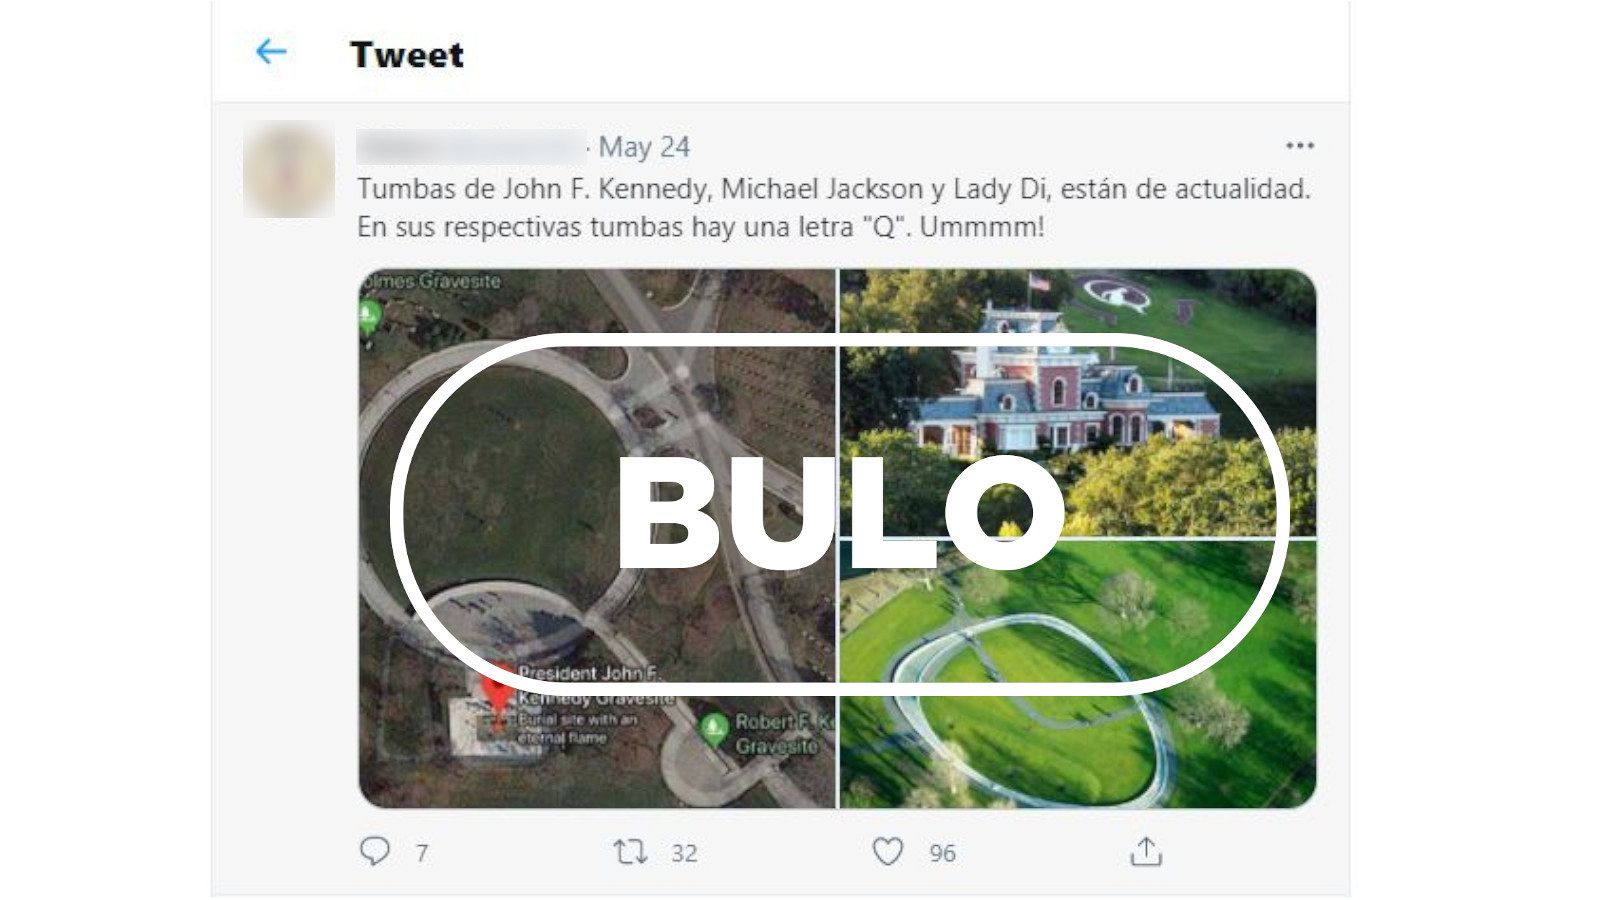 Tuit en el que se insinúa que hay un mensaje secreto del movimiento qanon en las tumbas de JFK, Michael Jackson y Lady Di con el sello de Bulo.